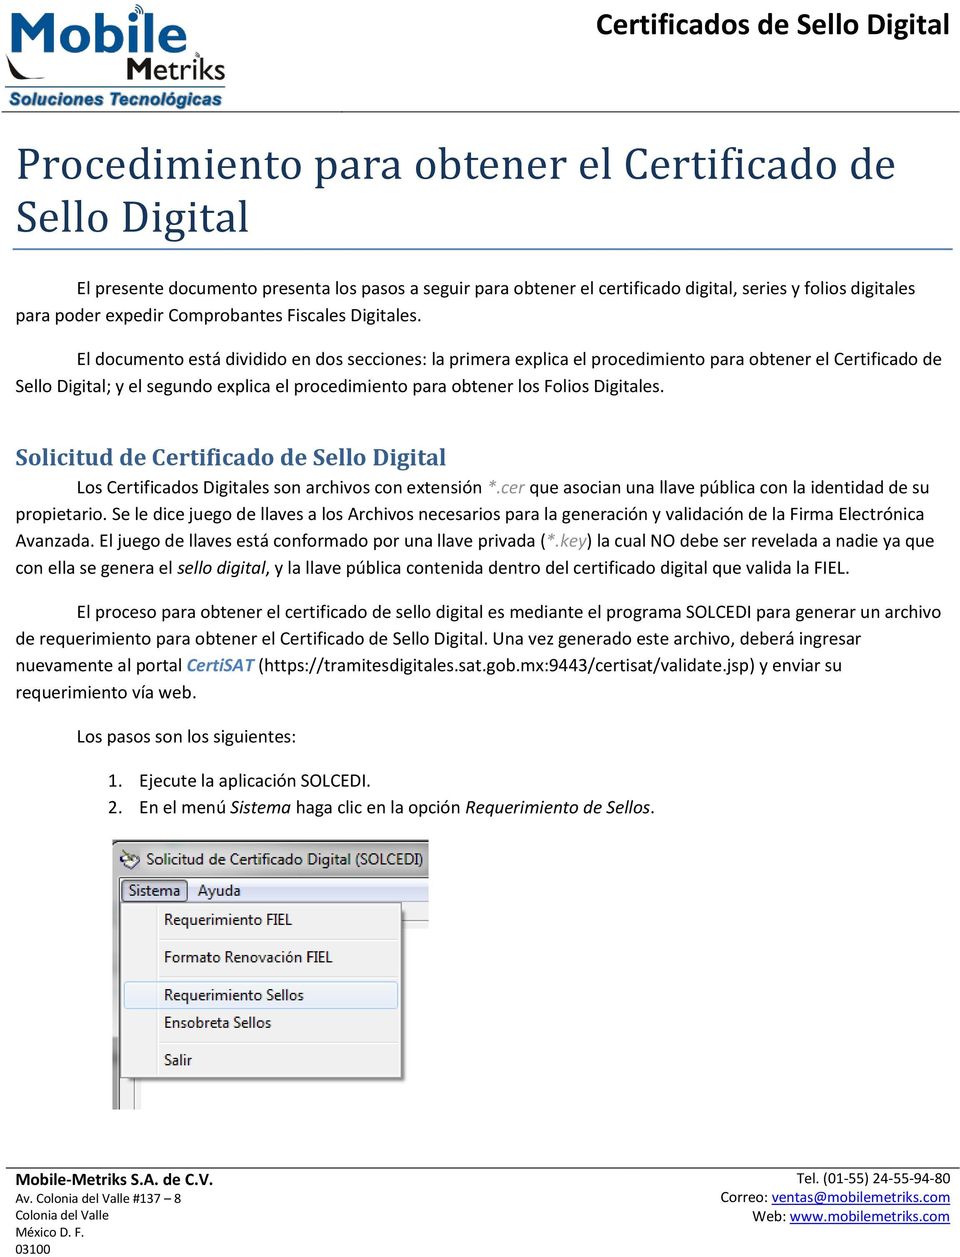 El documento está dividido en dos secciones: la primera explica el procedimiento para obtener el Certificado de Sello Digital; y el segundo explica el procedimiento para obtener los Folios Digitales.